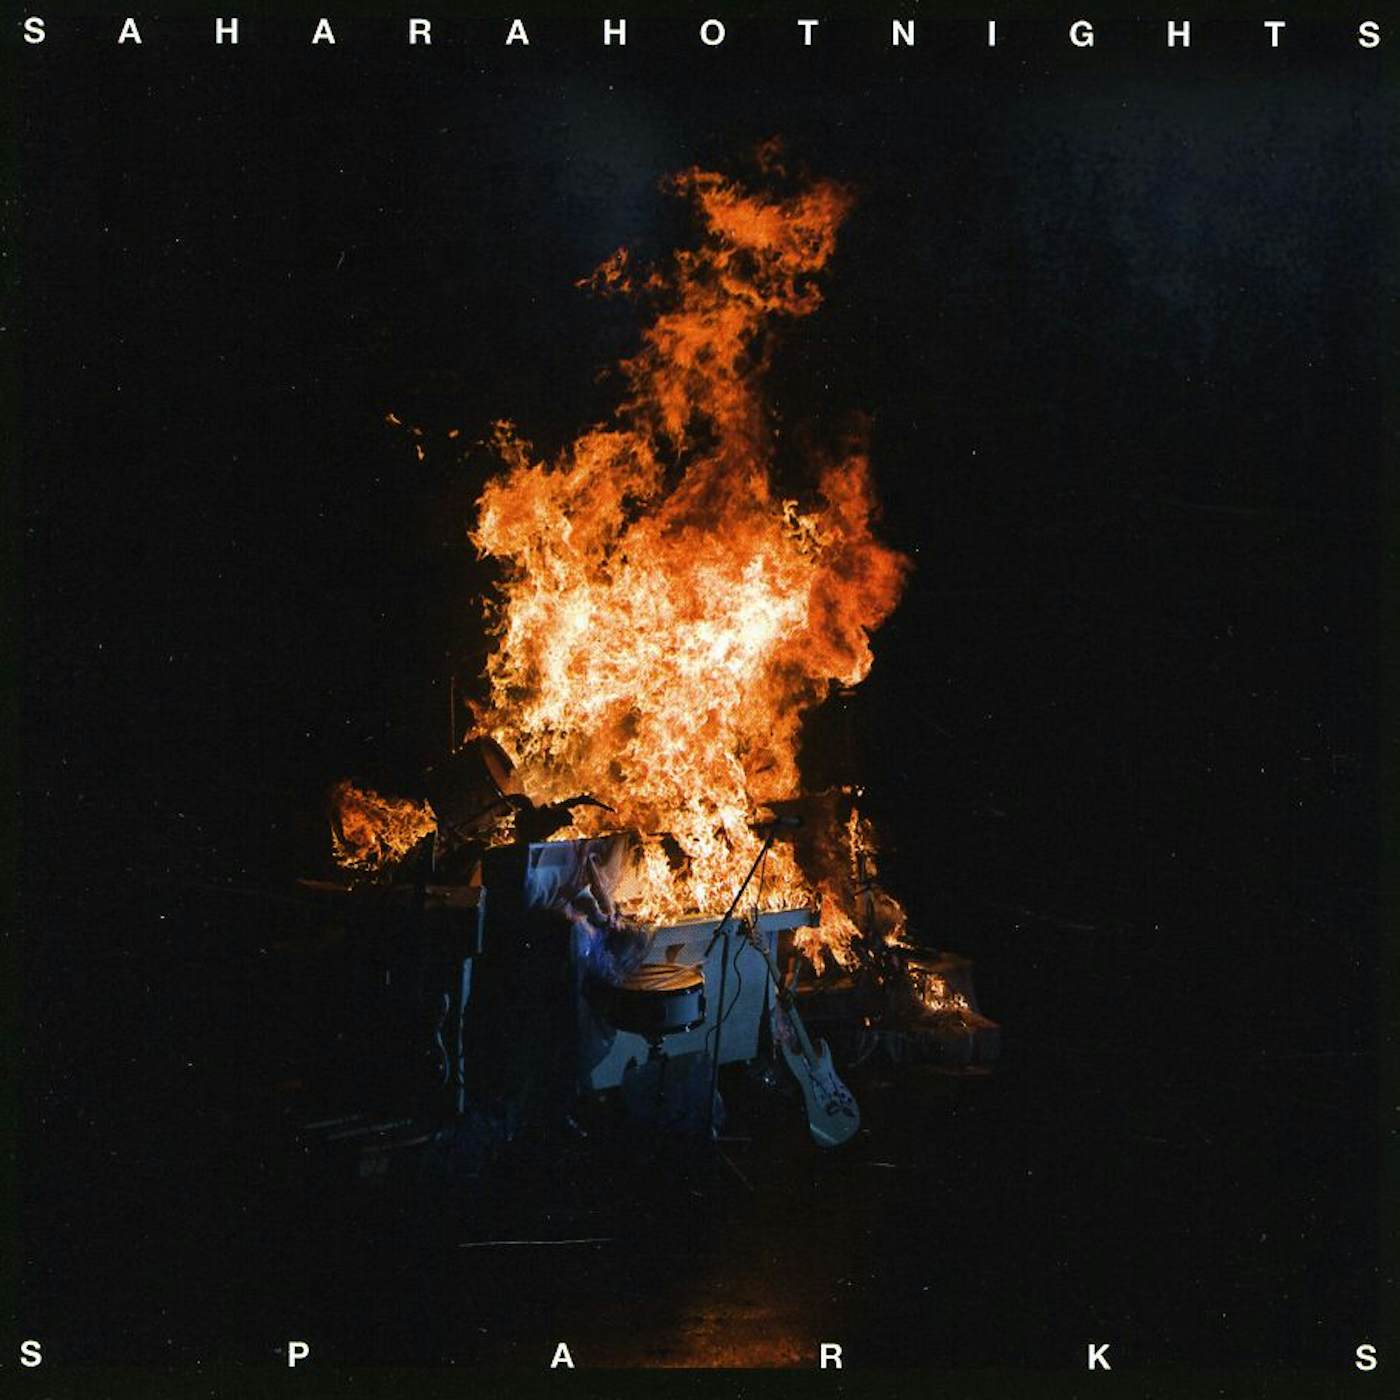 Sahara Hotnights SPARKS CD